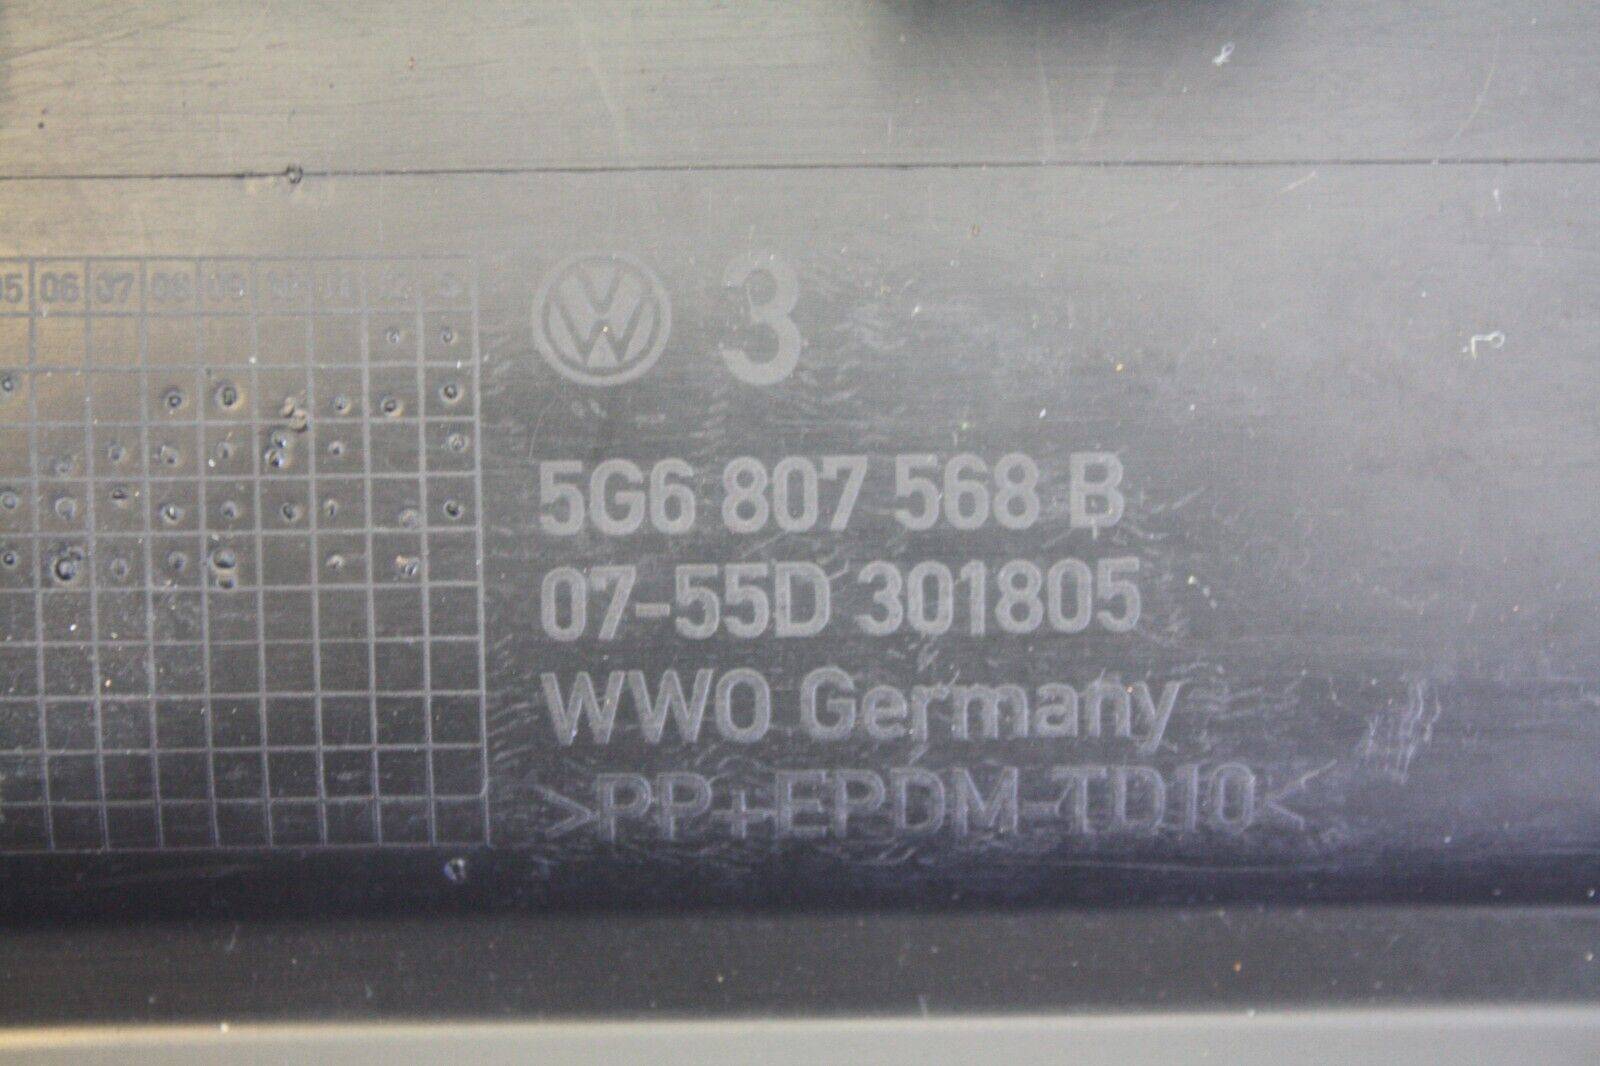 VW-Golf-Rear-Bumper-Diffuser-2013-TO-2017-5G6807568B-Genuine-176310435660-11